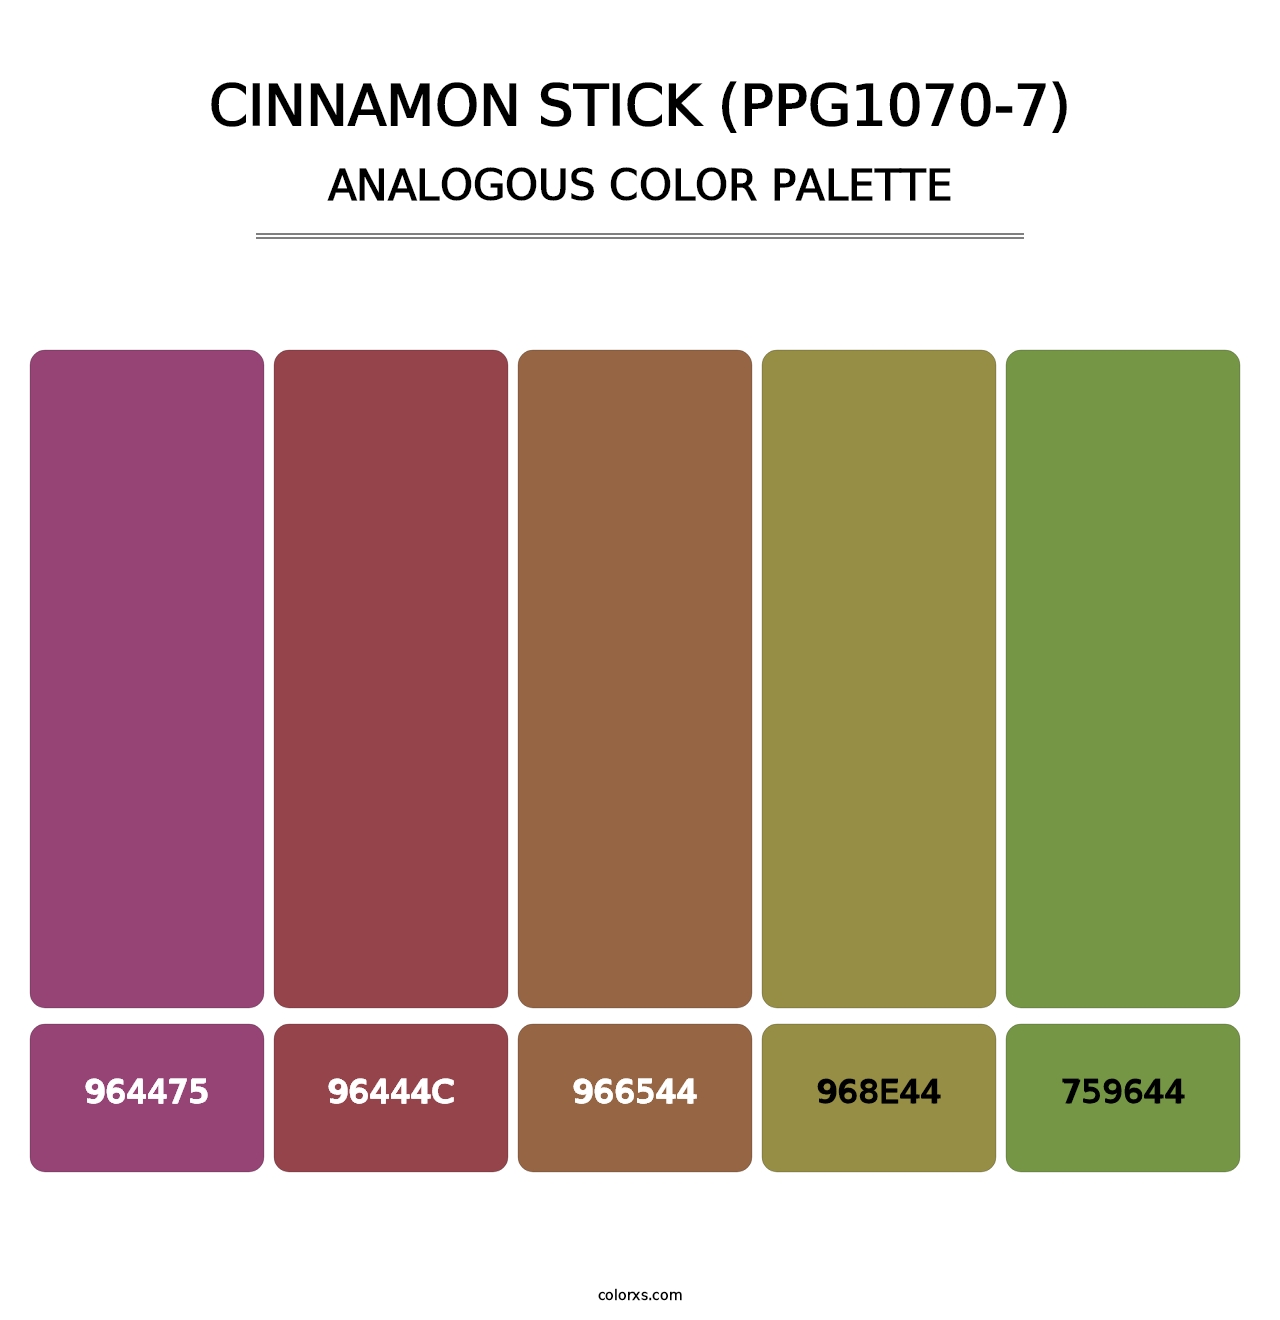 Cinnamon Stick (PPG1070-7) - Analogous Color Palette